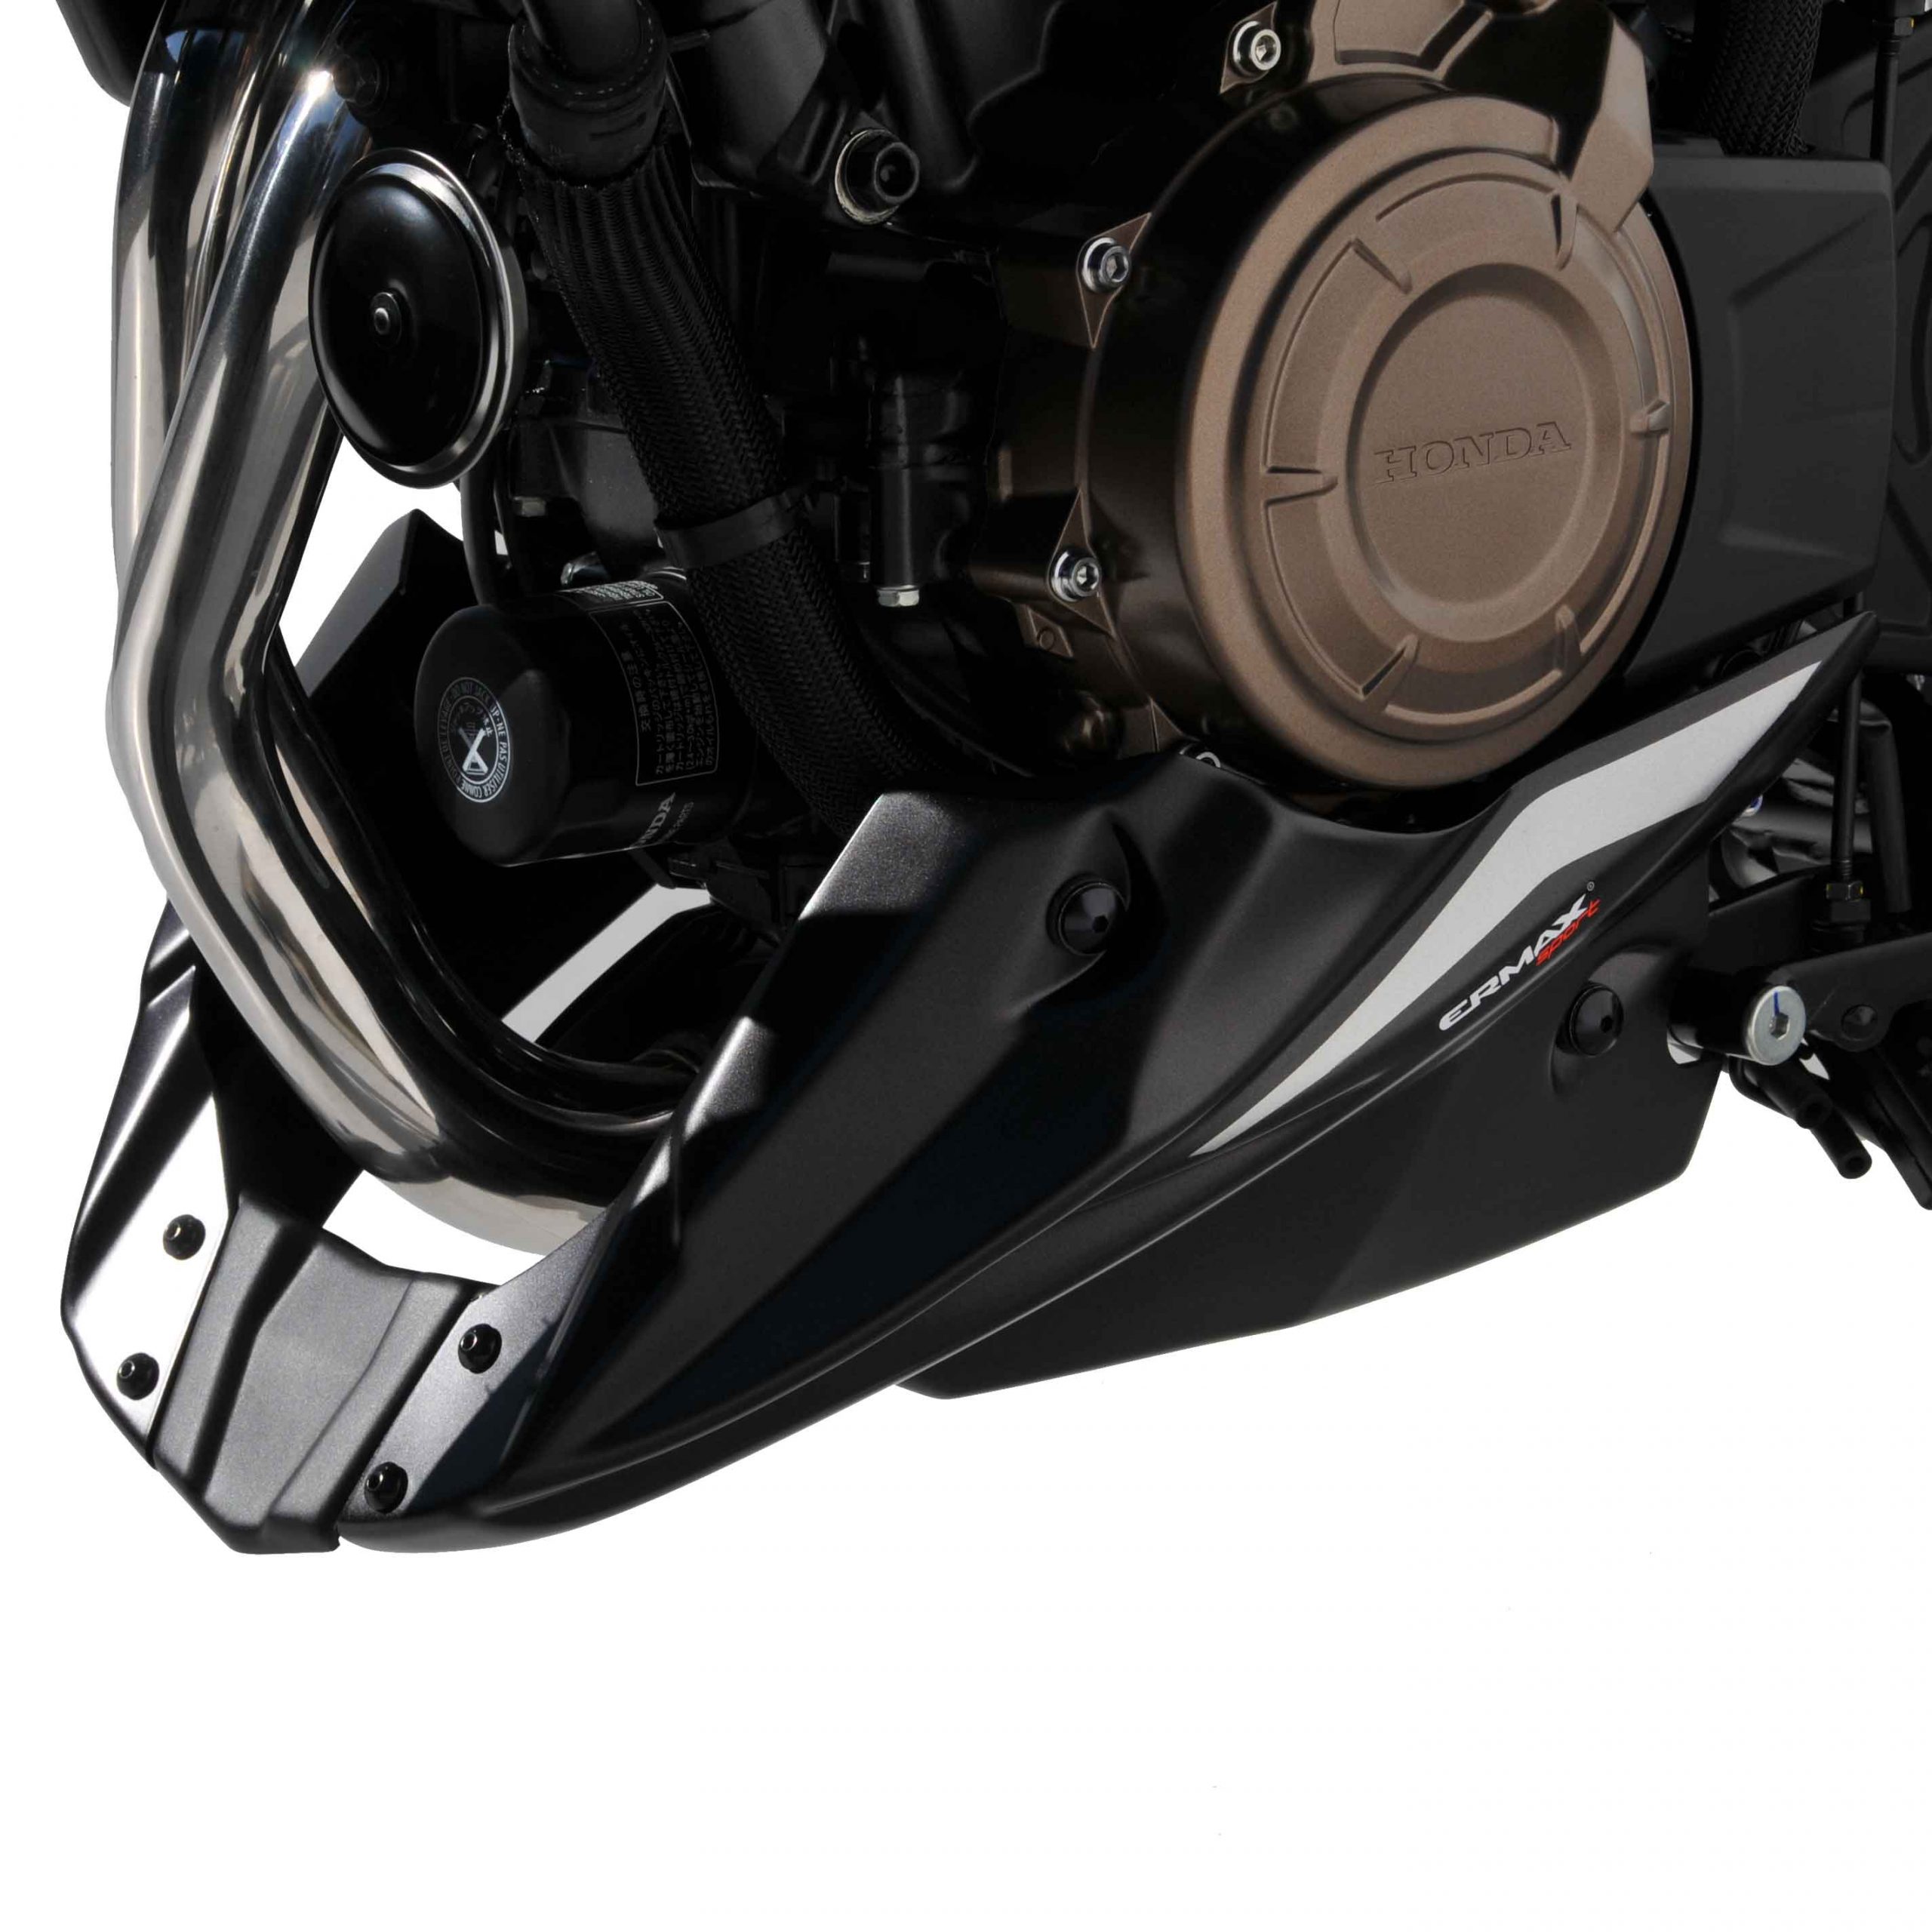 Bauchgummi (evo 3 Teile) Ermax für Honda CB 500 F 2019 2020 schwarz satiniert glänzend (serie black line) 2019/2020